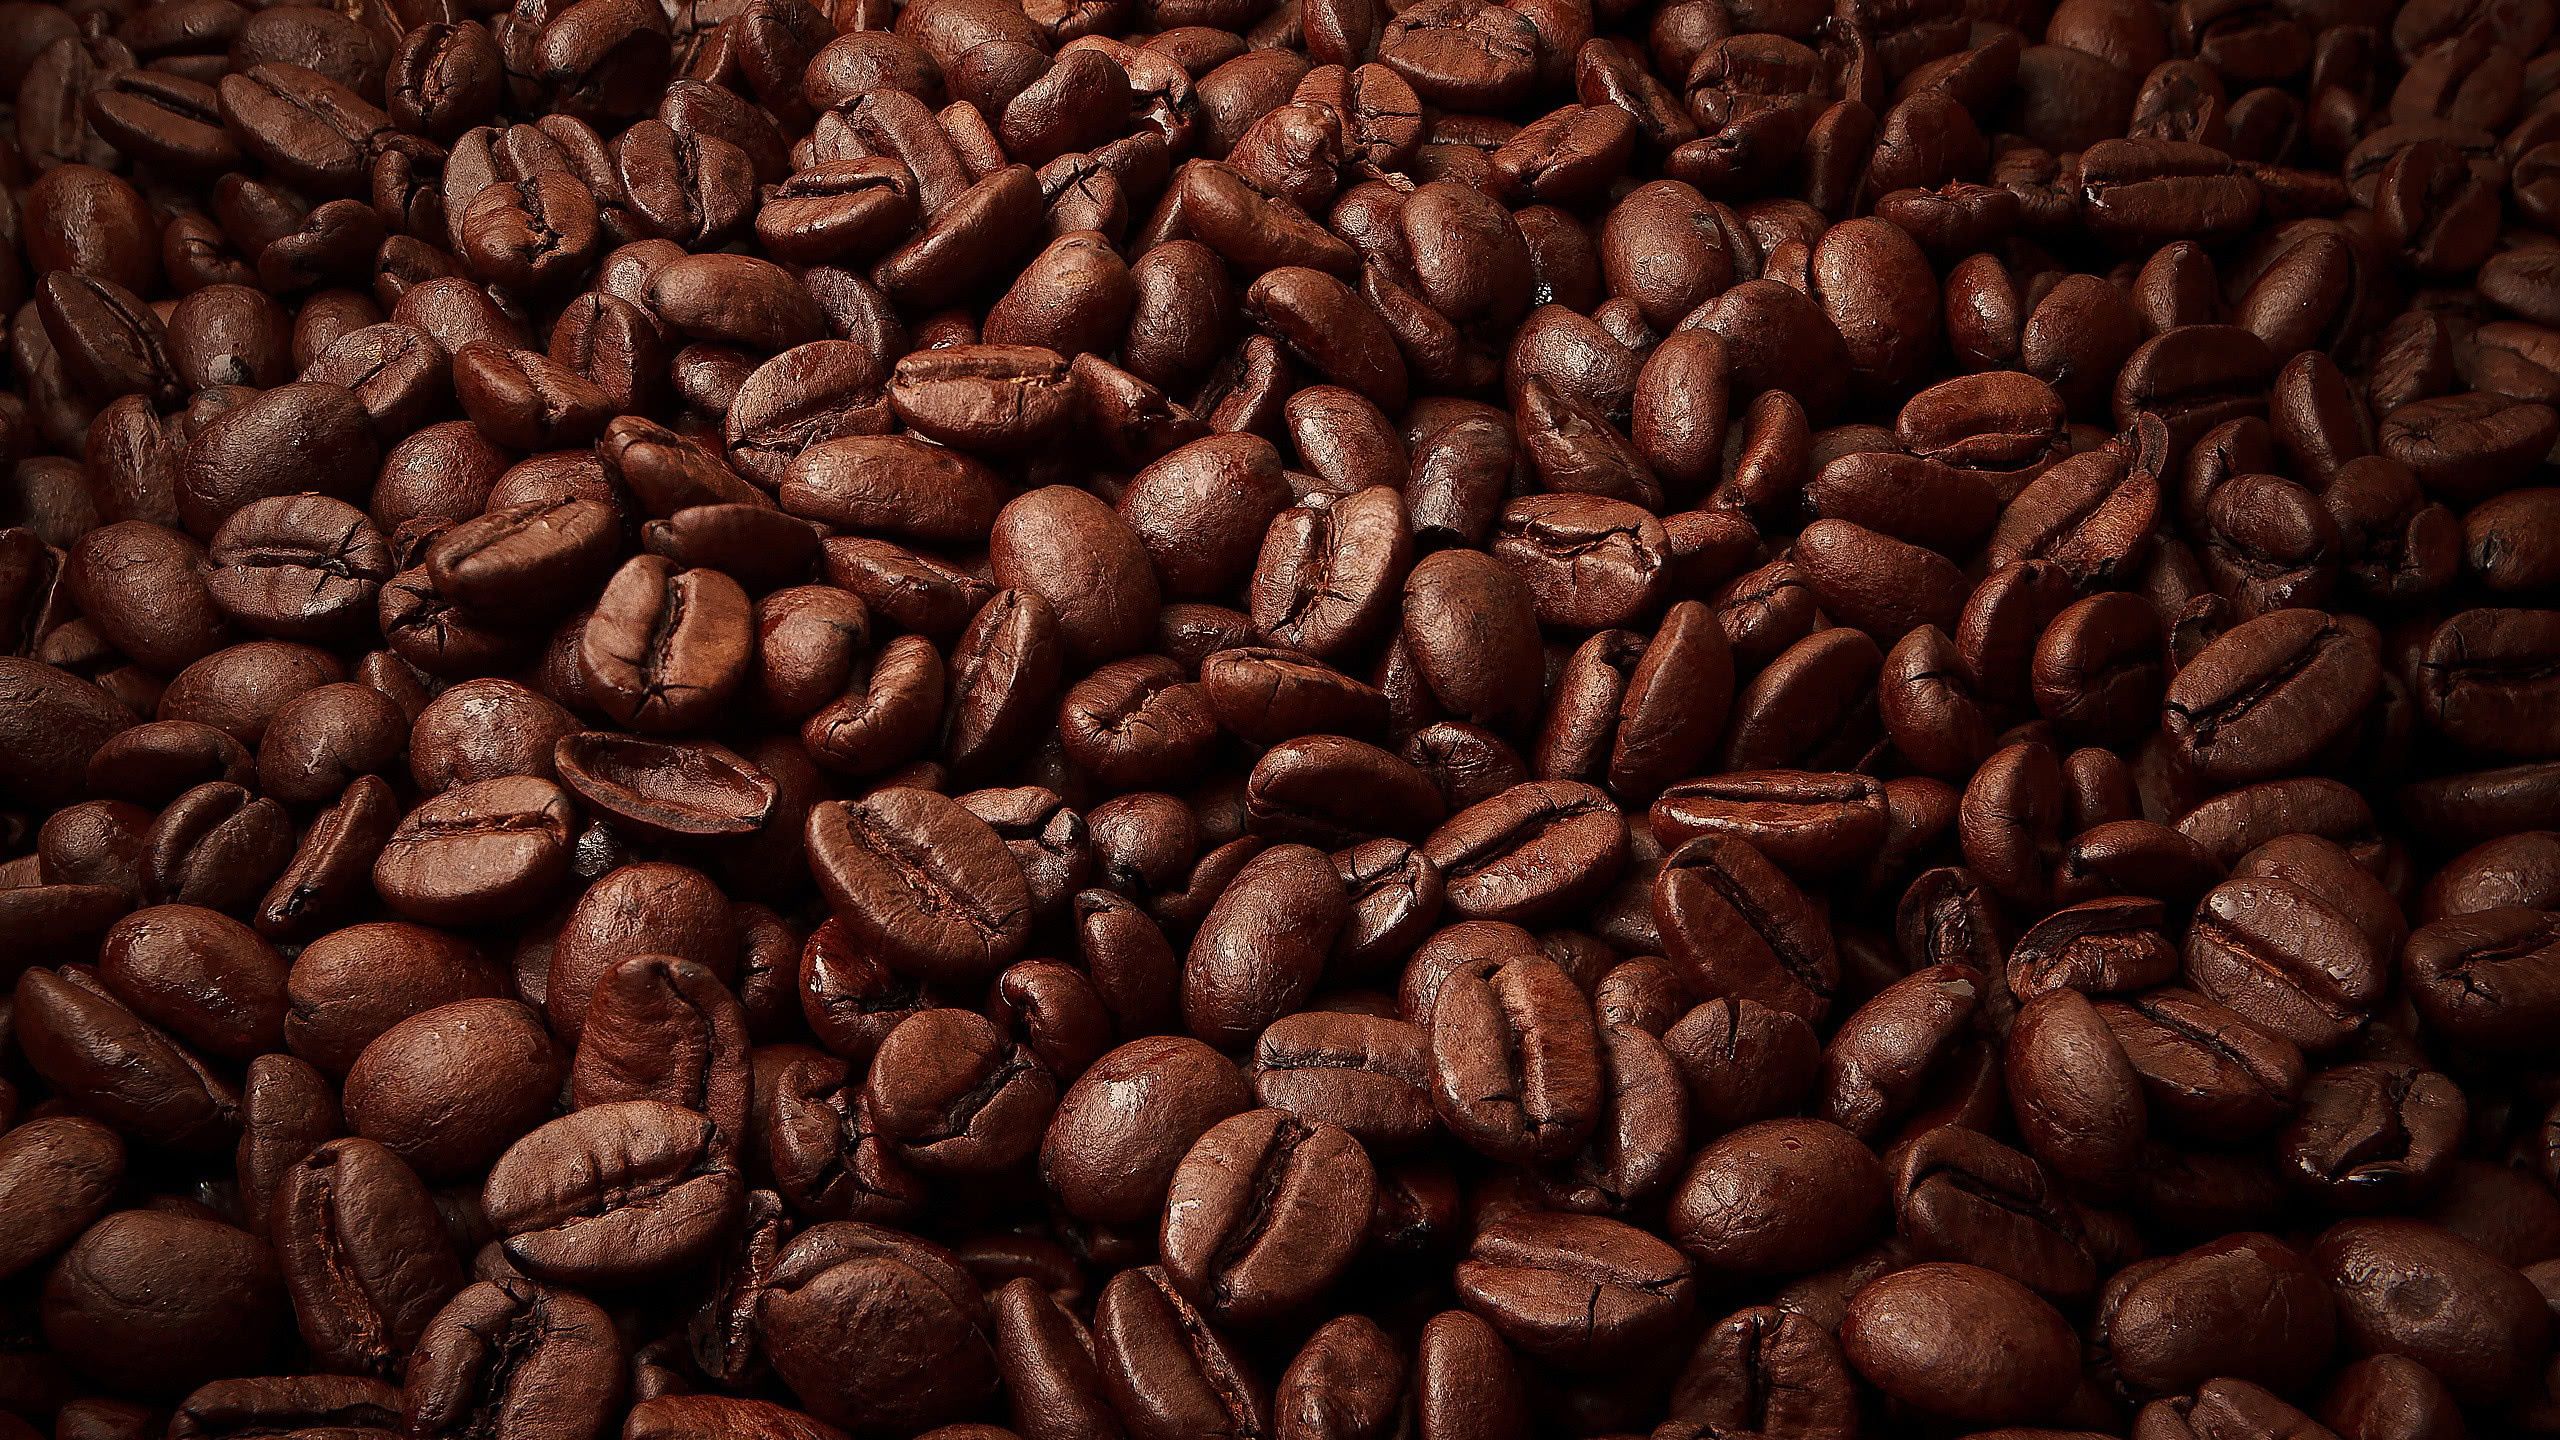 Coffee Beans WQHD 1440P Wallpaper